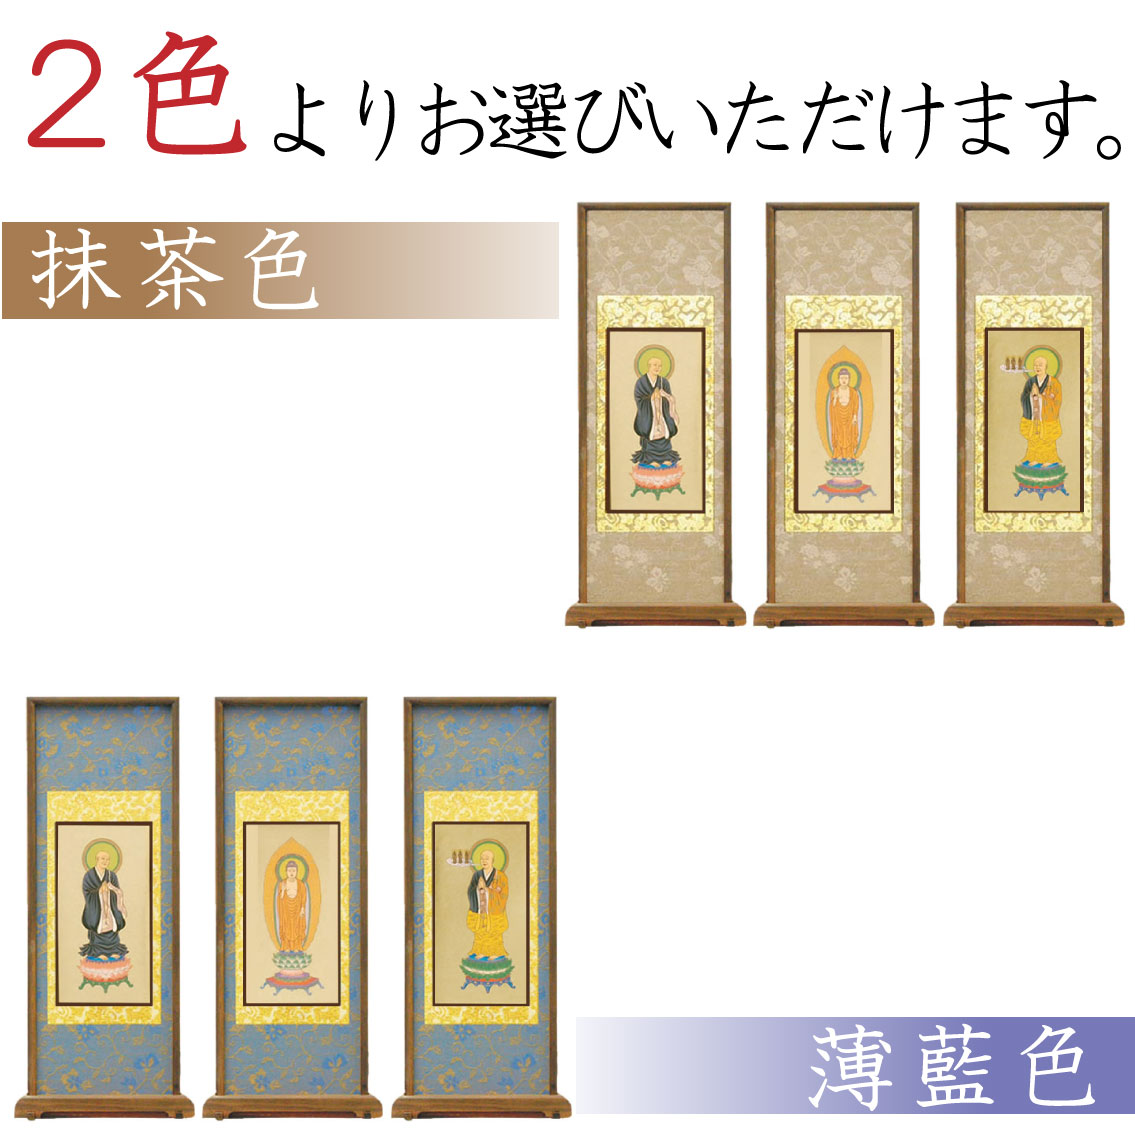 【高級素材」浄土宗のスタンド式掛け軸は、2色からお選び頂けます。